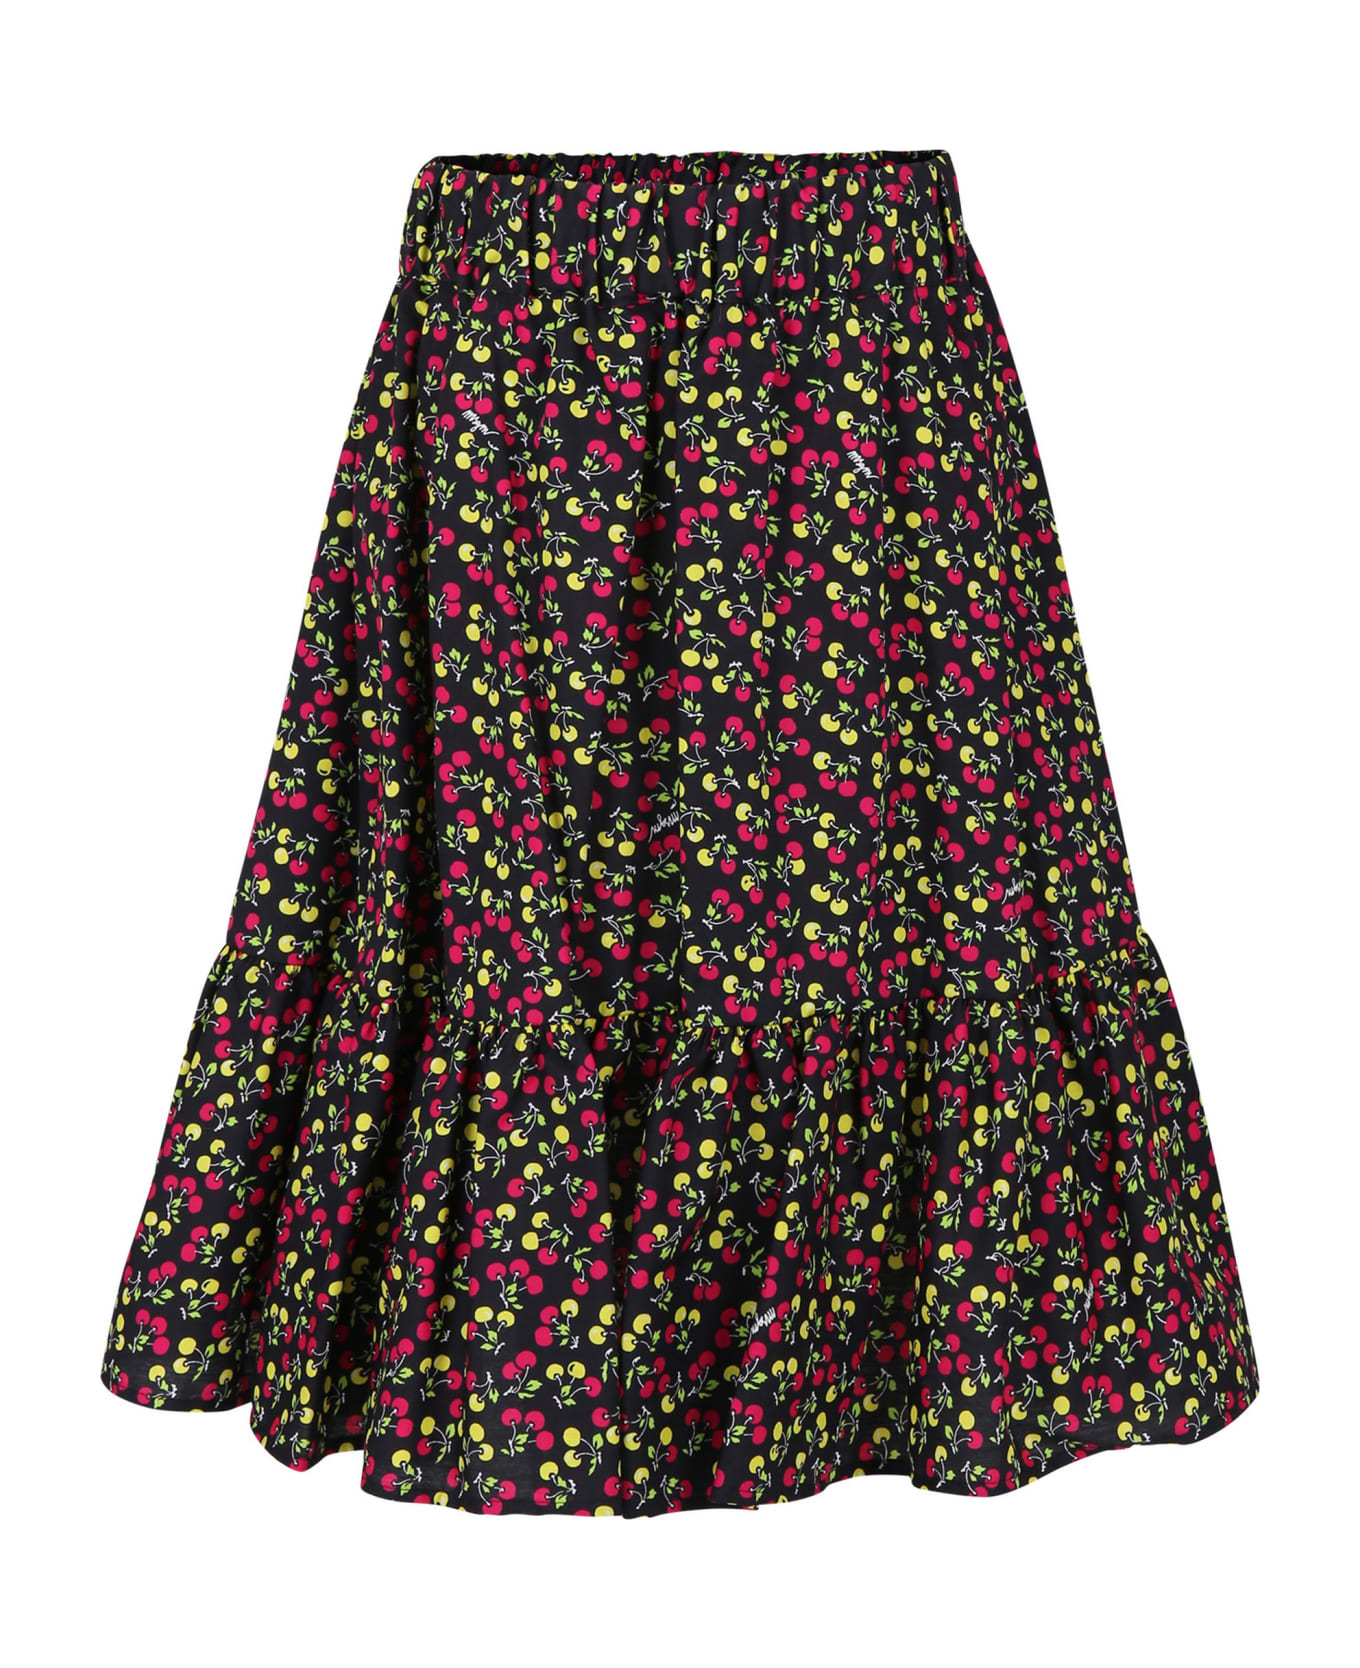 MSGM Black Skirt For Girl With Cherry Print - Black